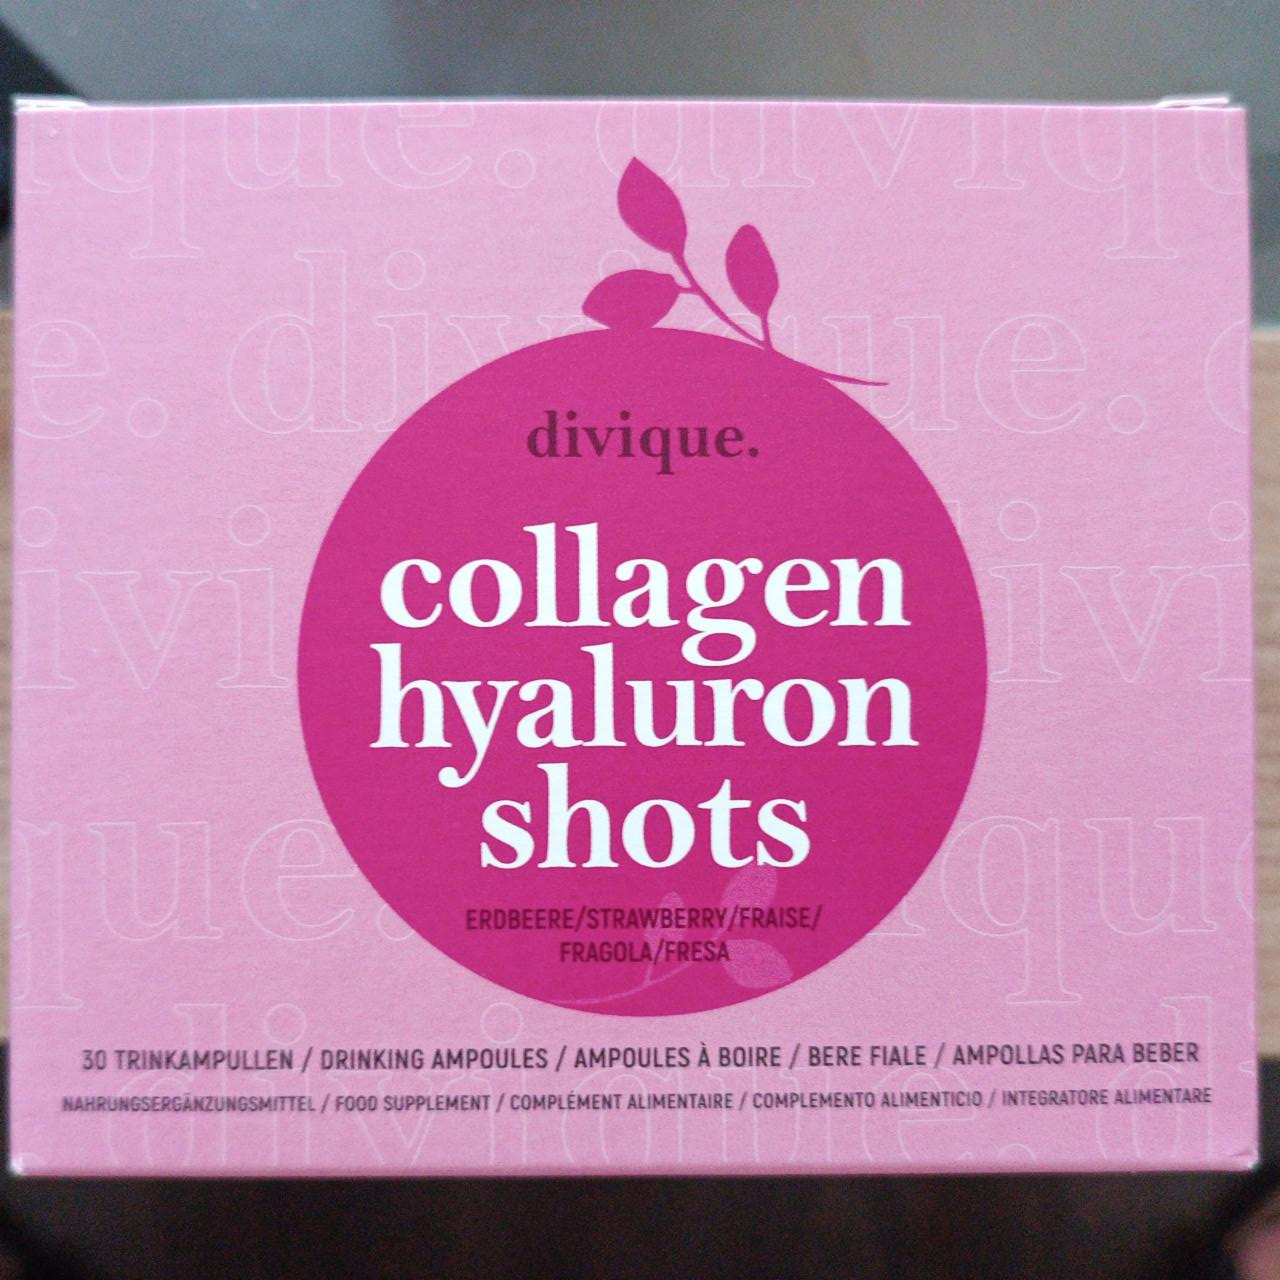 Fotografie - divique collagen hyaluron shots